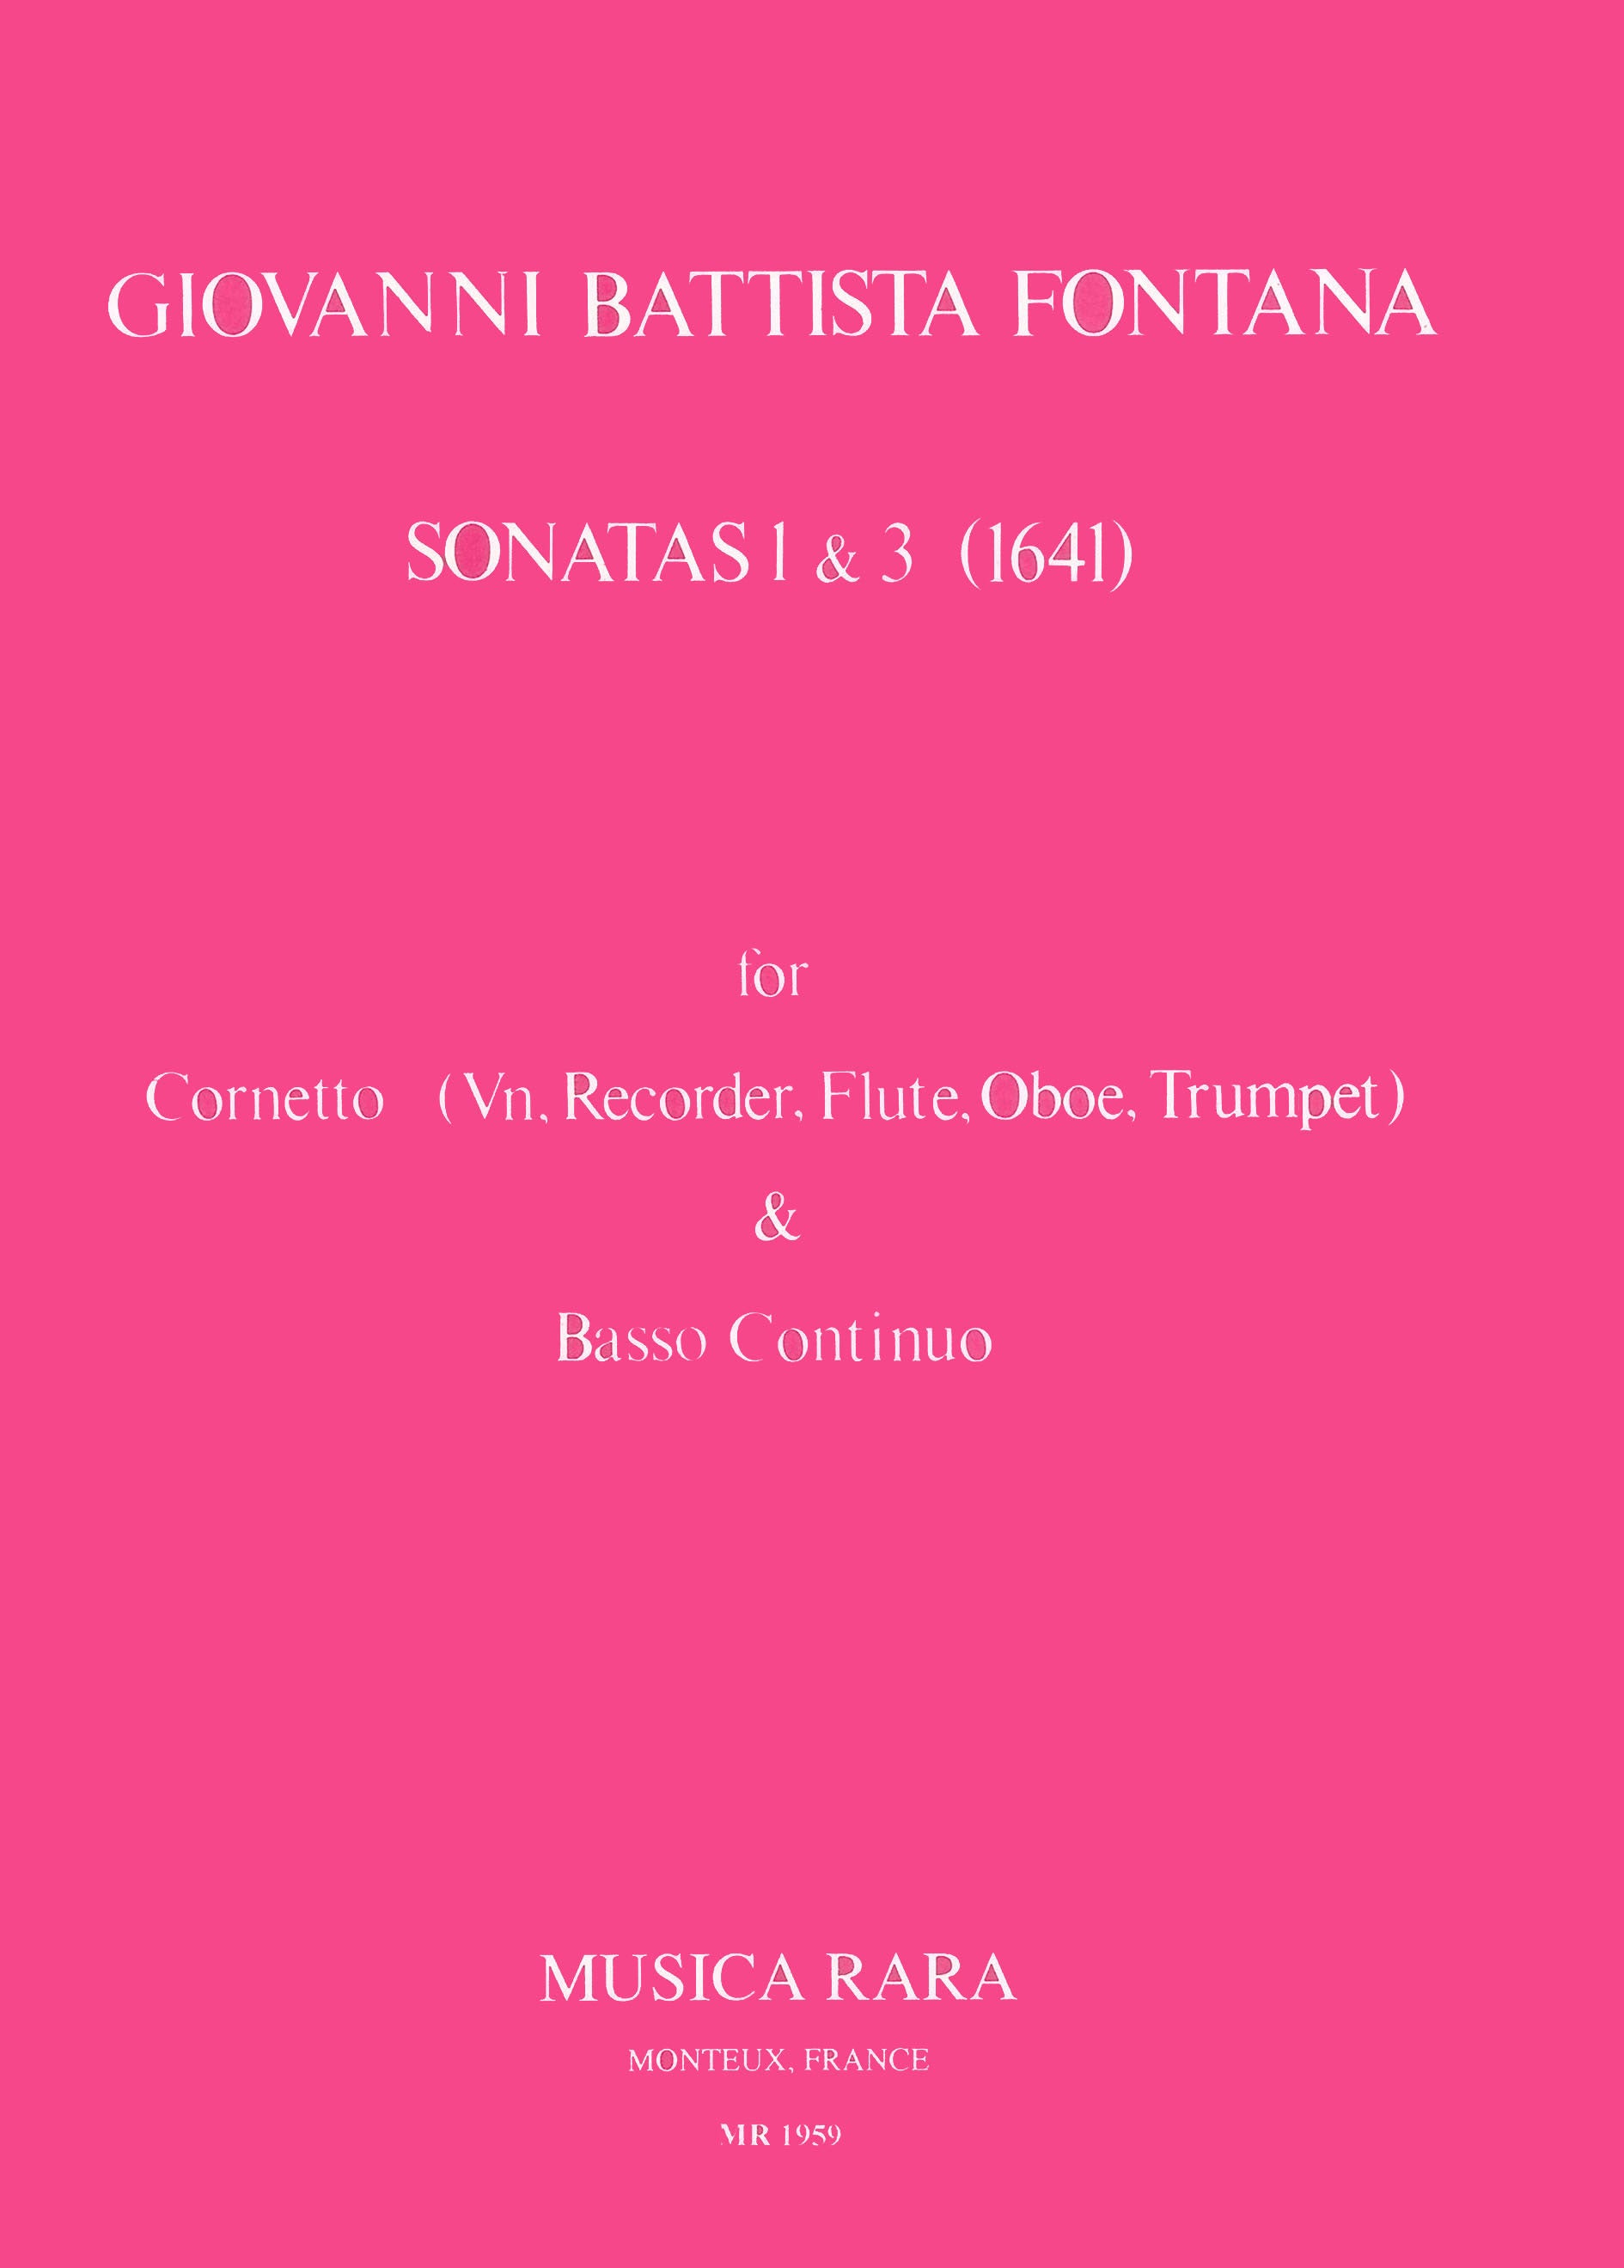 Fontana: Violin Sonatas Nos. 1 & 3 in C Major